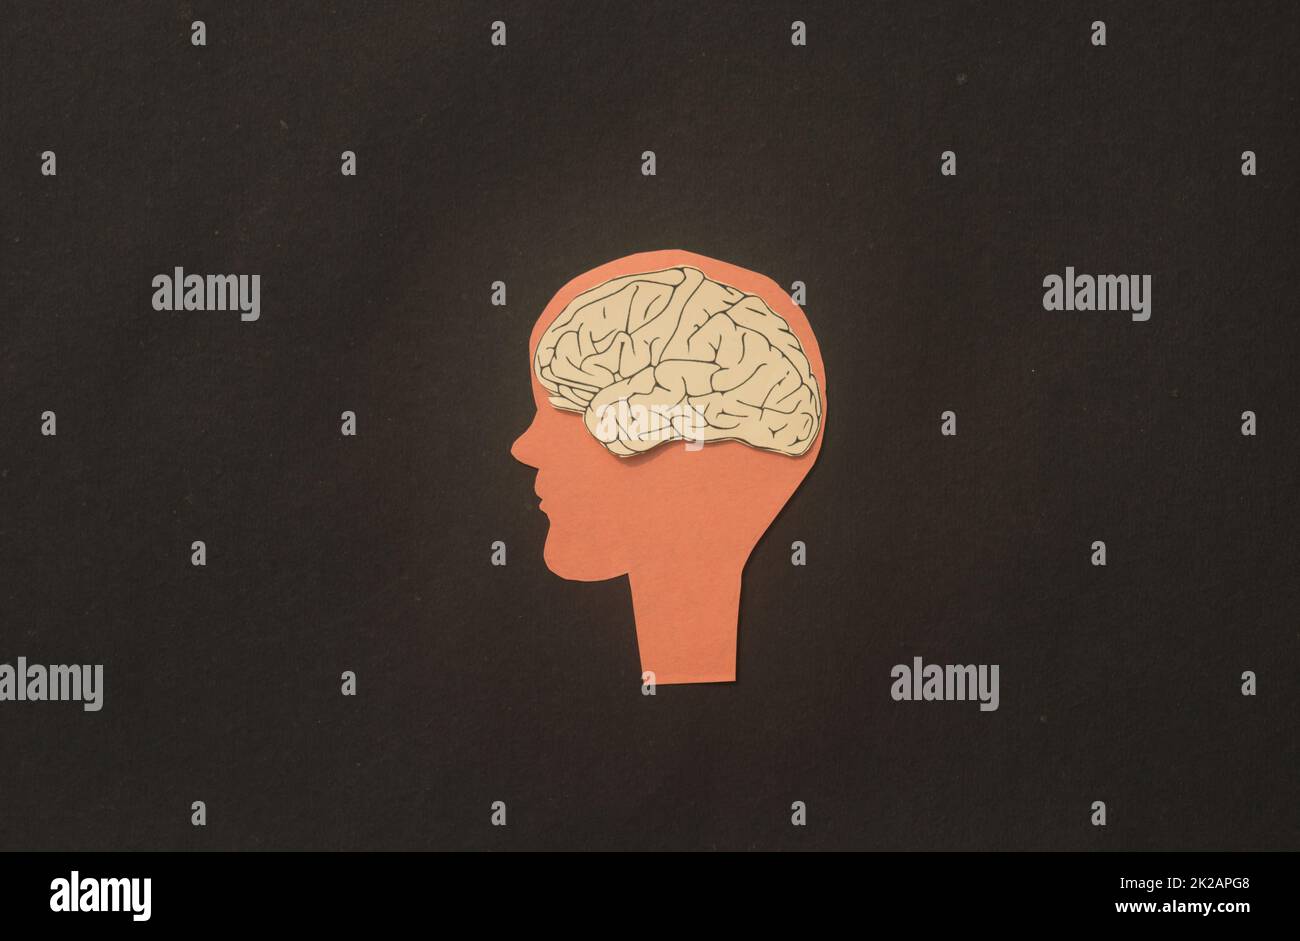 Papier cerveau humain dans une illustration de tête de silhouette. Idée de pensée et esprit créatif. Banque D'Images